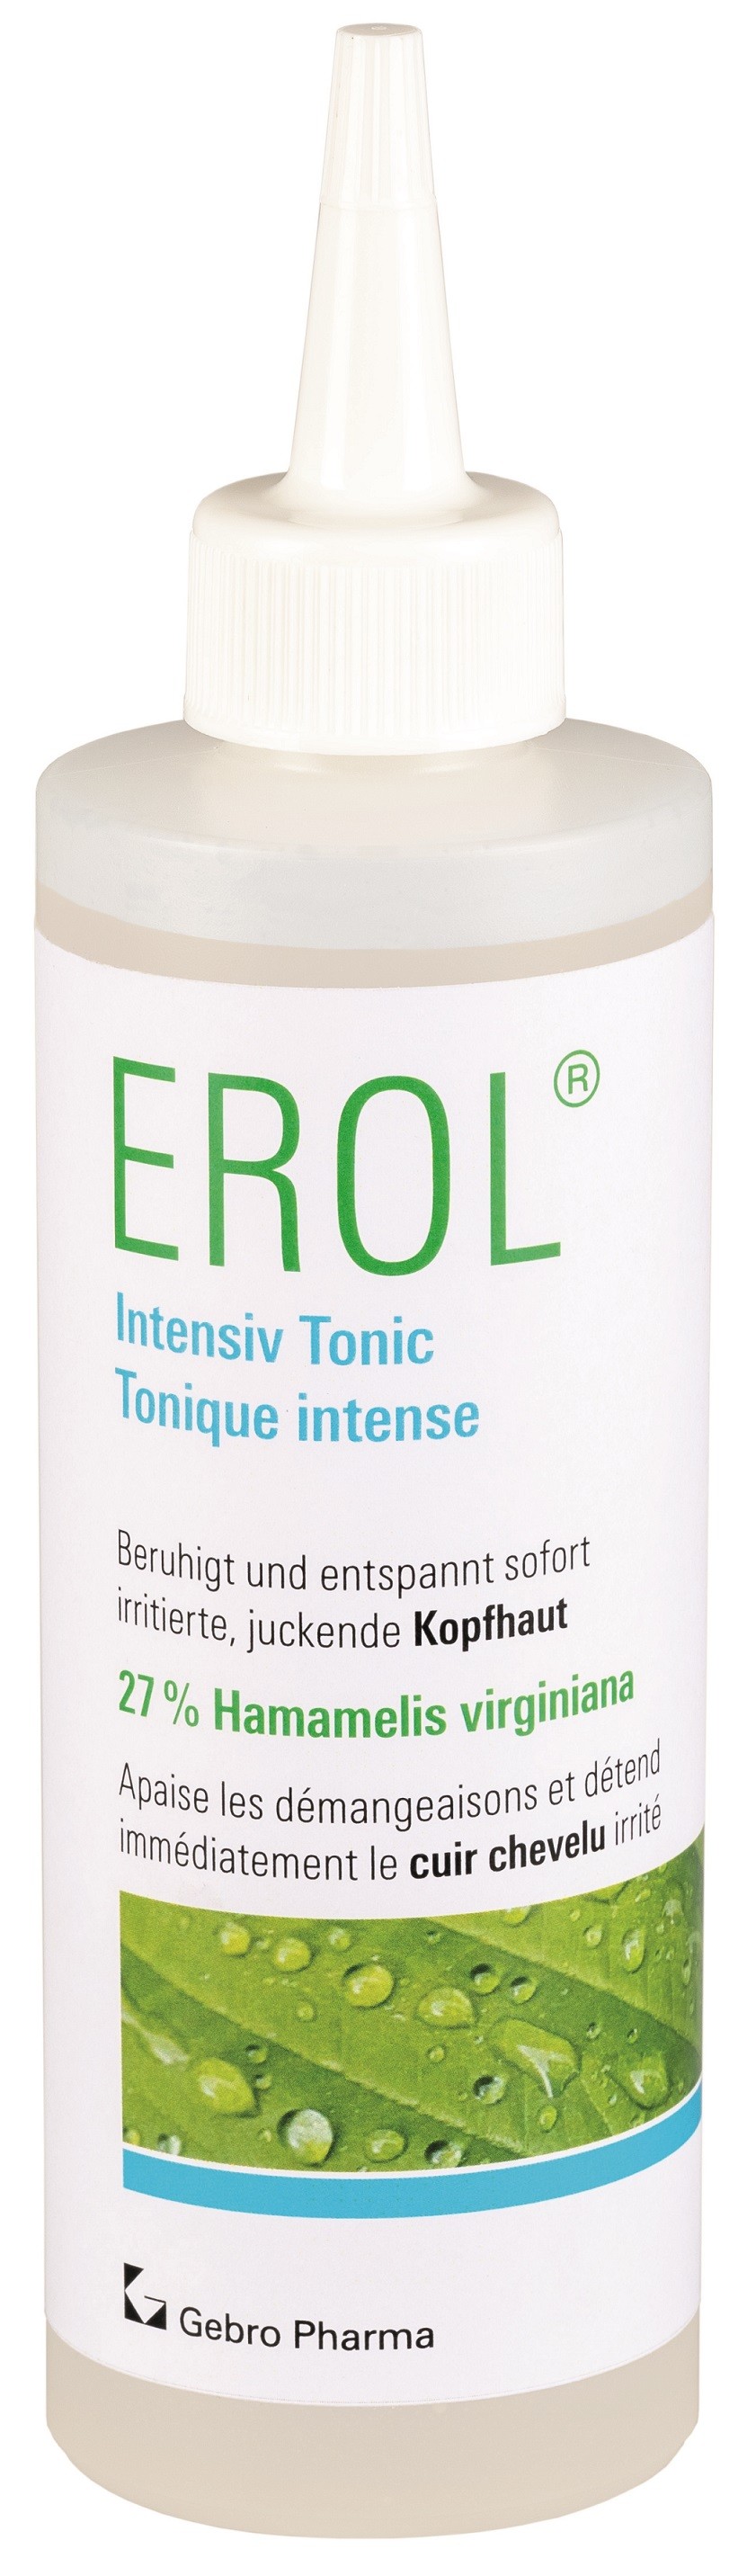 Image of EROL Intensiv Tonic (200ml)